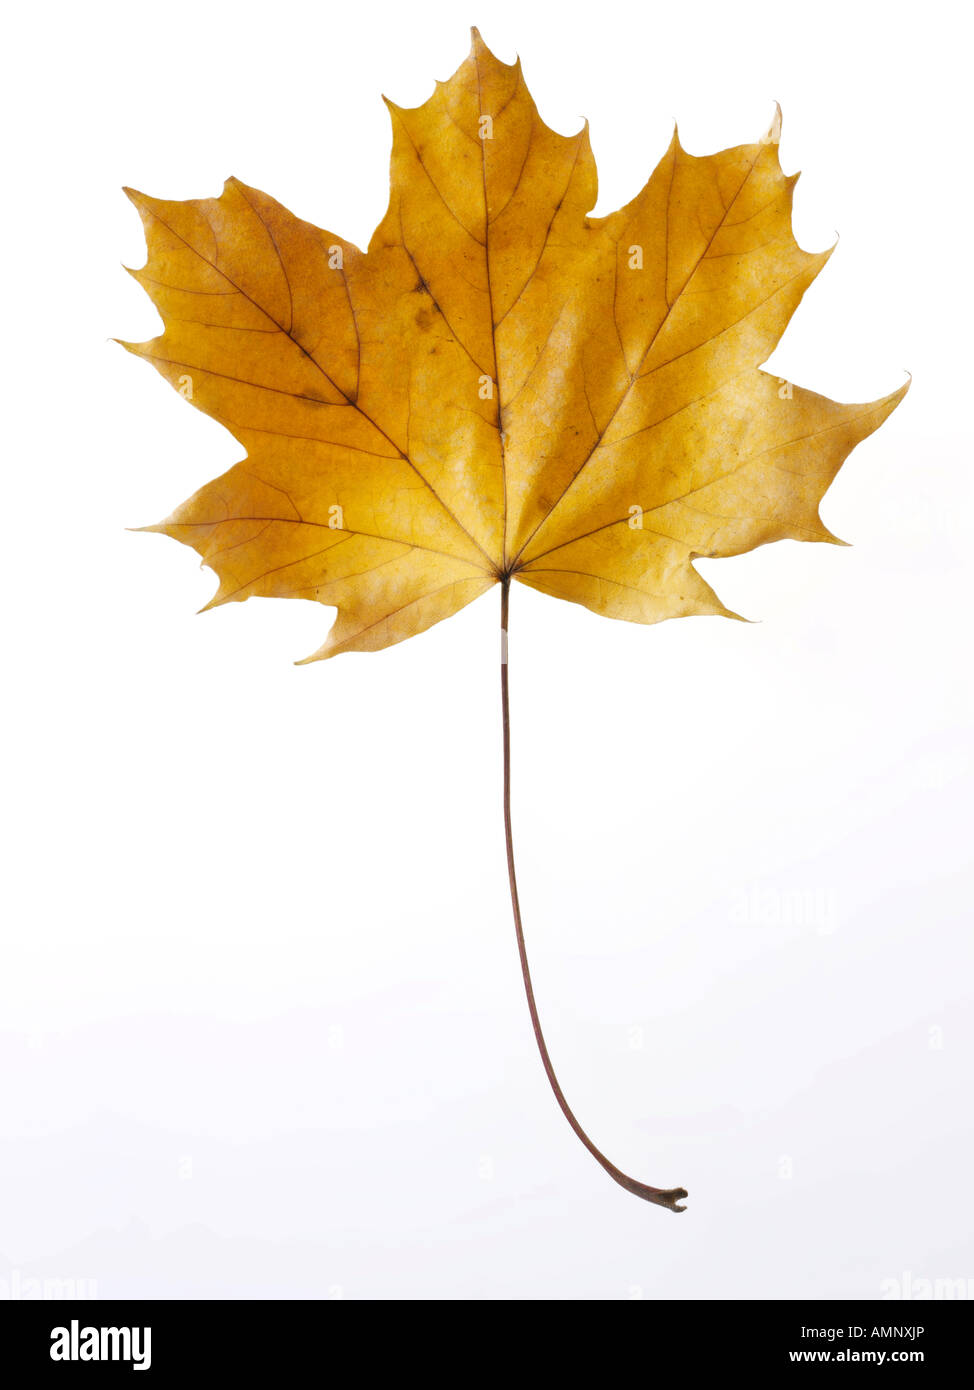 Singoli autunno autunno foglia contro uno sfondo bianco. immagine grafica contro uno sfondo bianco per il taglio. Foto Stock